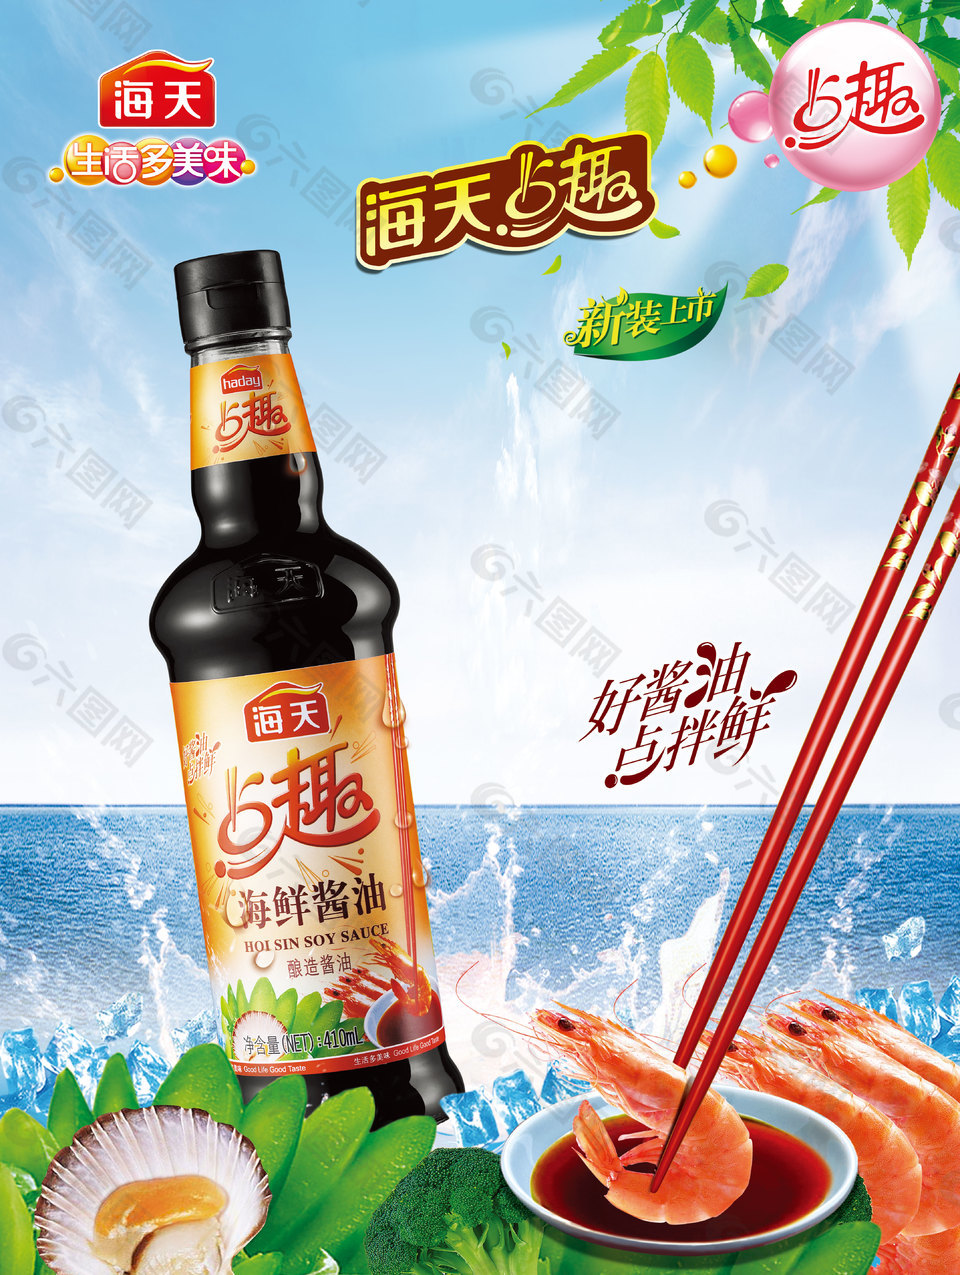 海天 海鲜酱油平面广告素材免费下载(图片编号:8836321)